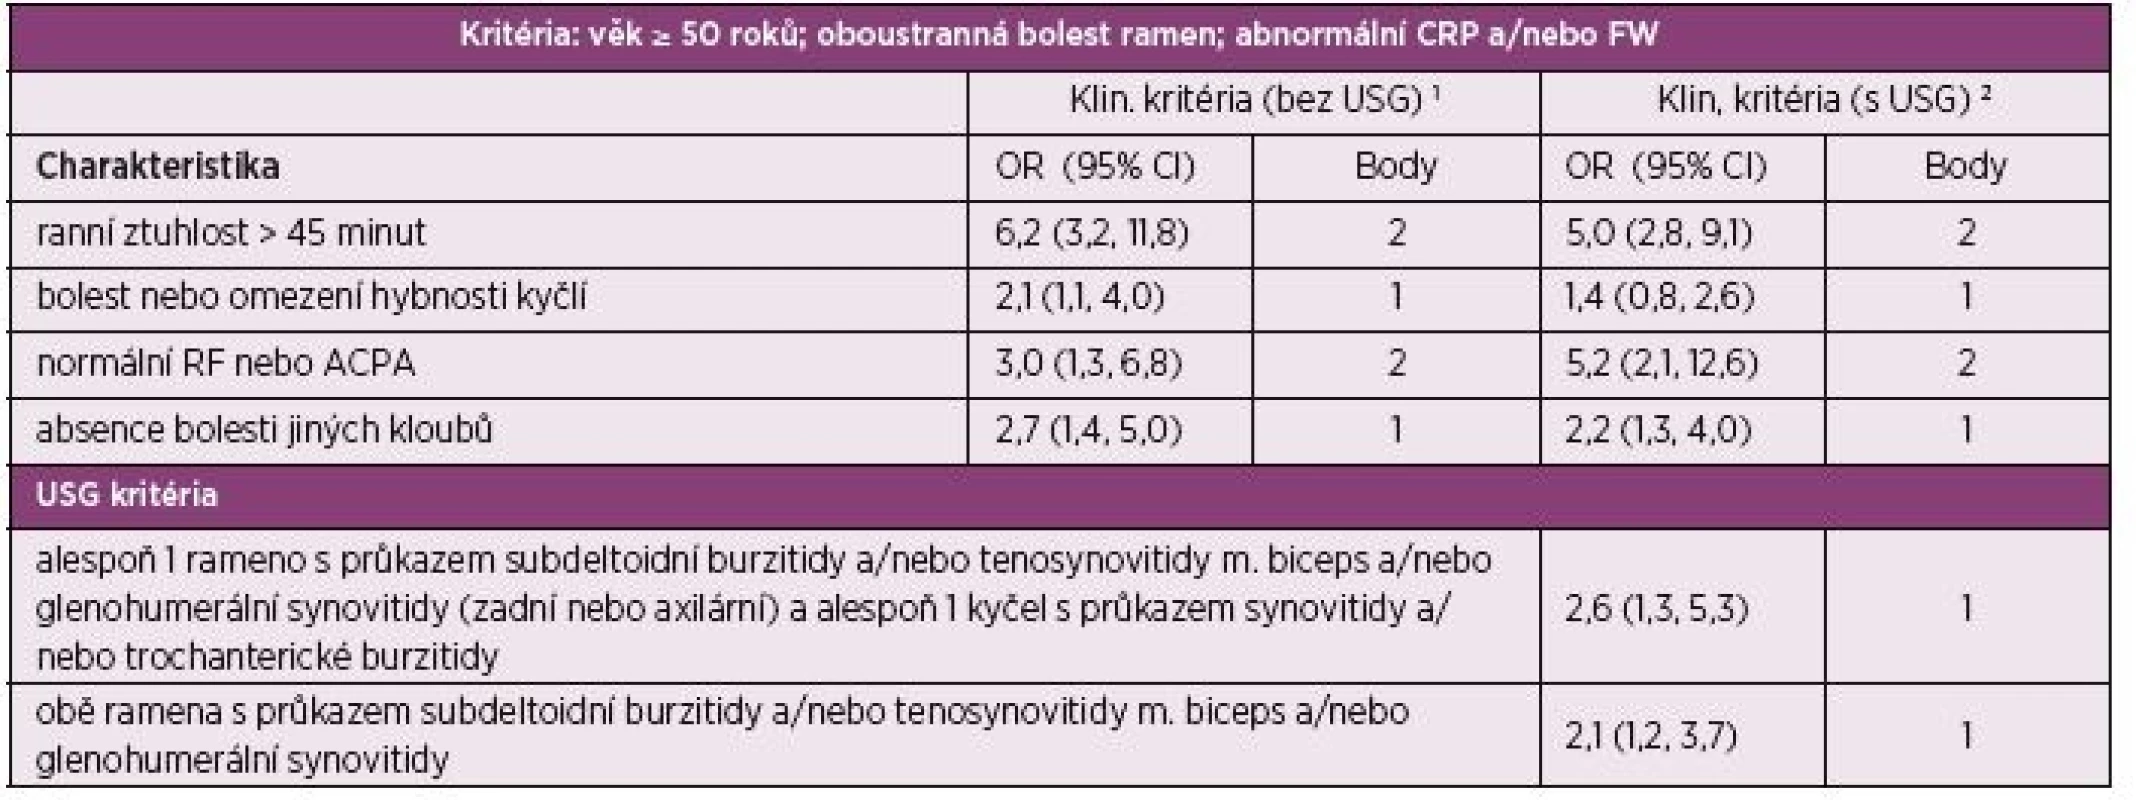 Klasifikační kritéria EULAR/ACR pro polymyalgia rheumatica z roku 2012. Skórovací algoritmus pro polymyalgia rheumatica s a
bez použití ultrazvukového vyšetření.